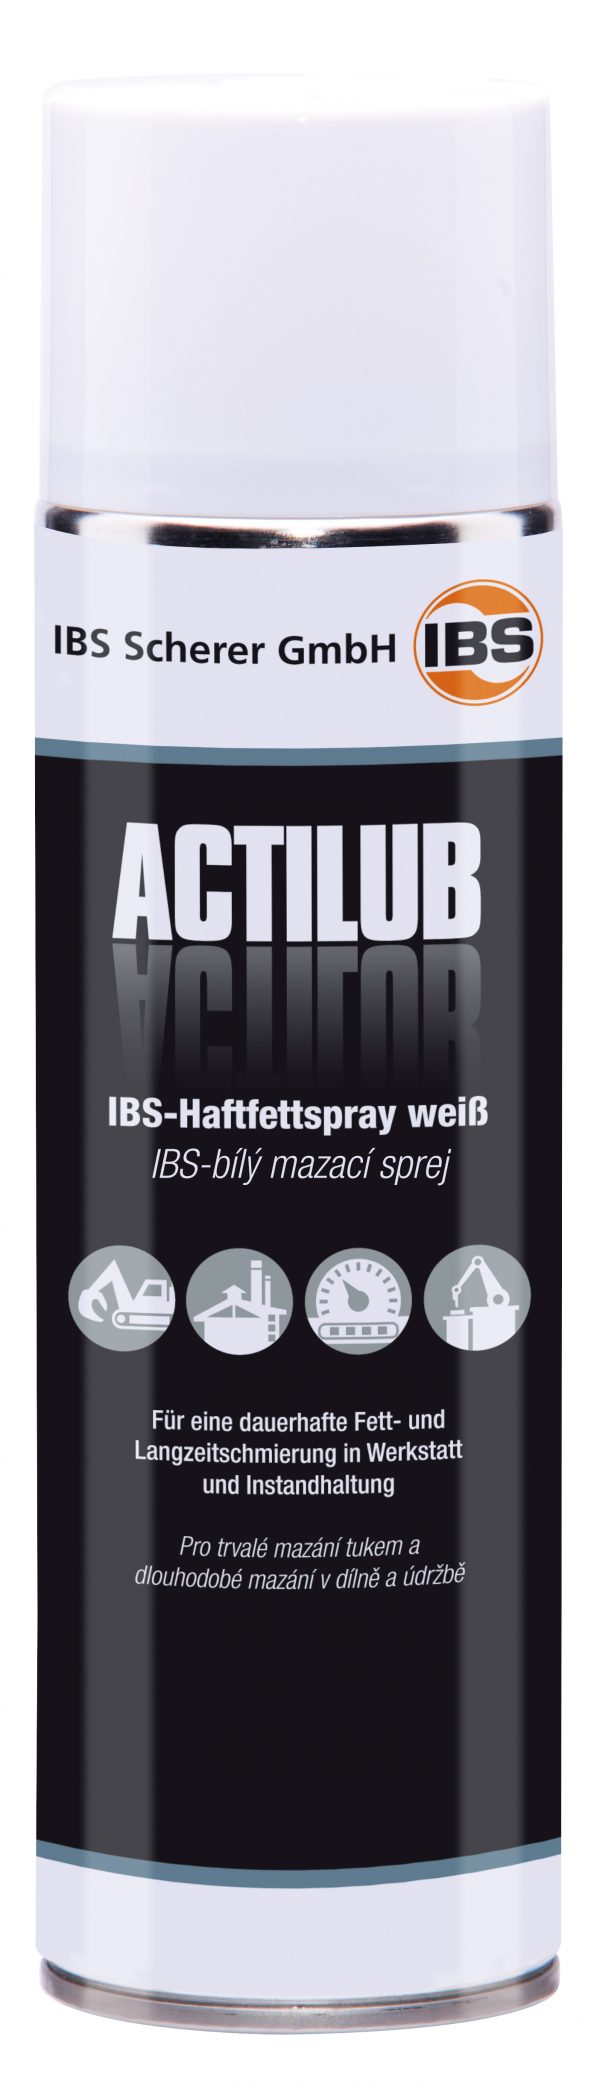 IBS-Spray de grasa adhesiva blanco ActiLub